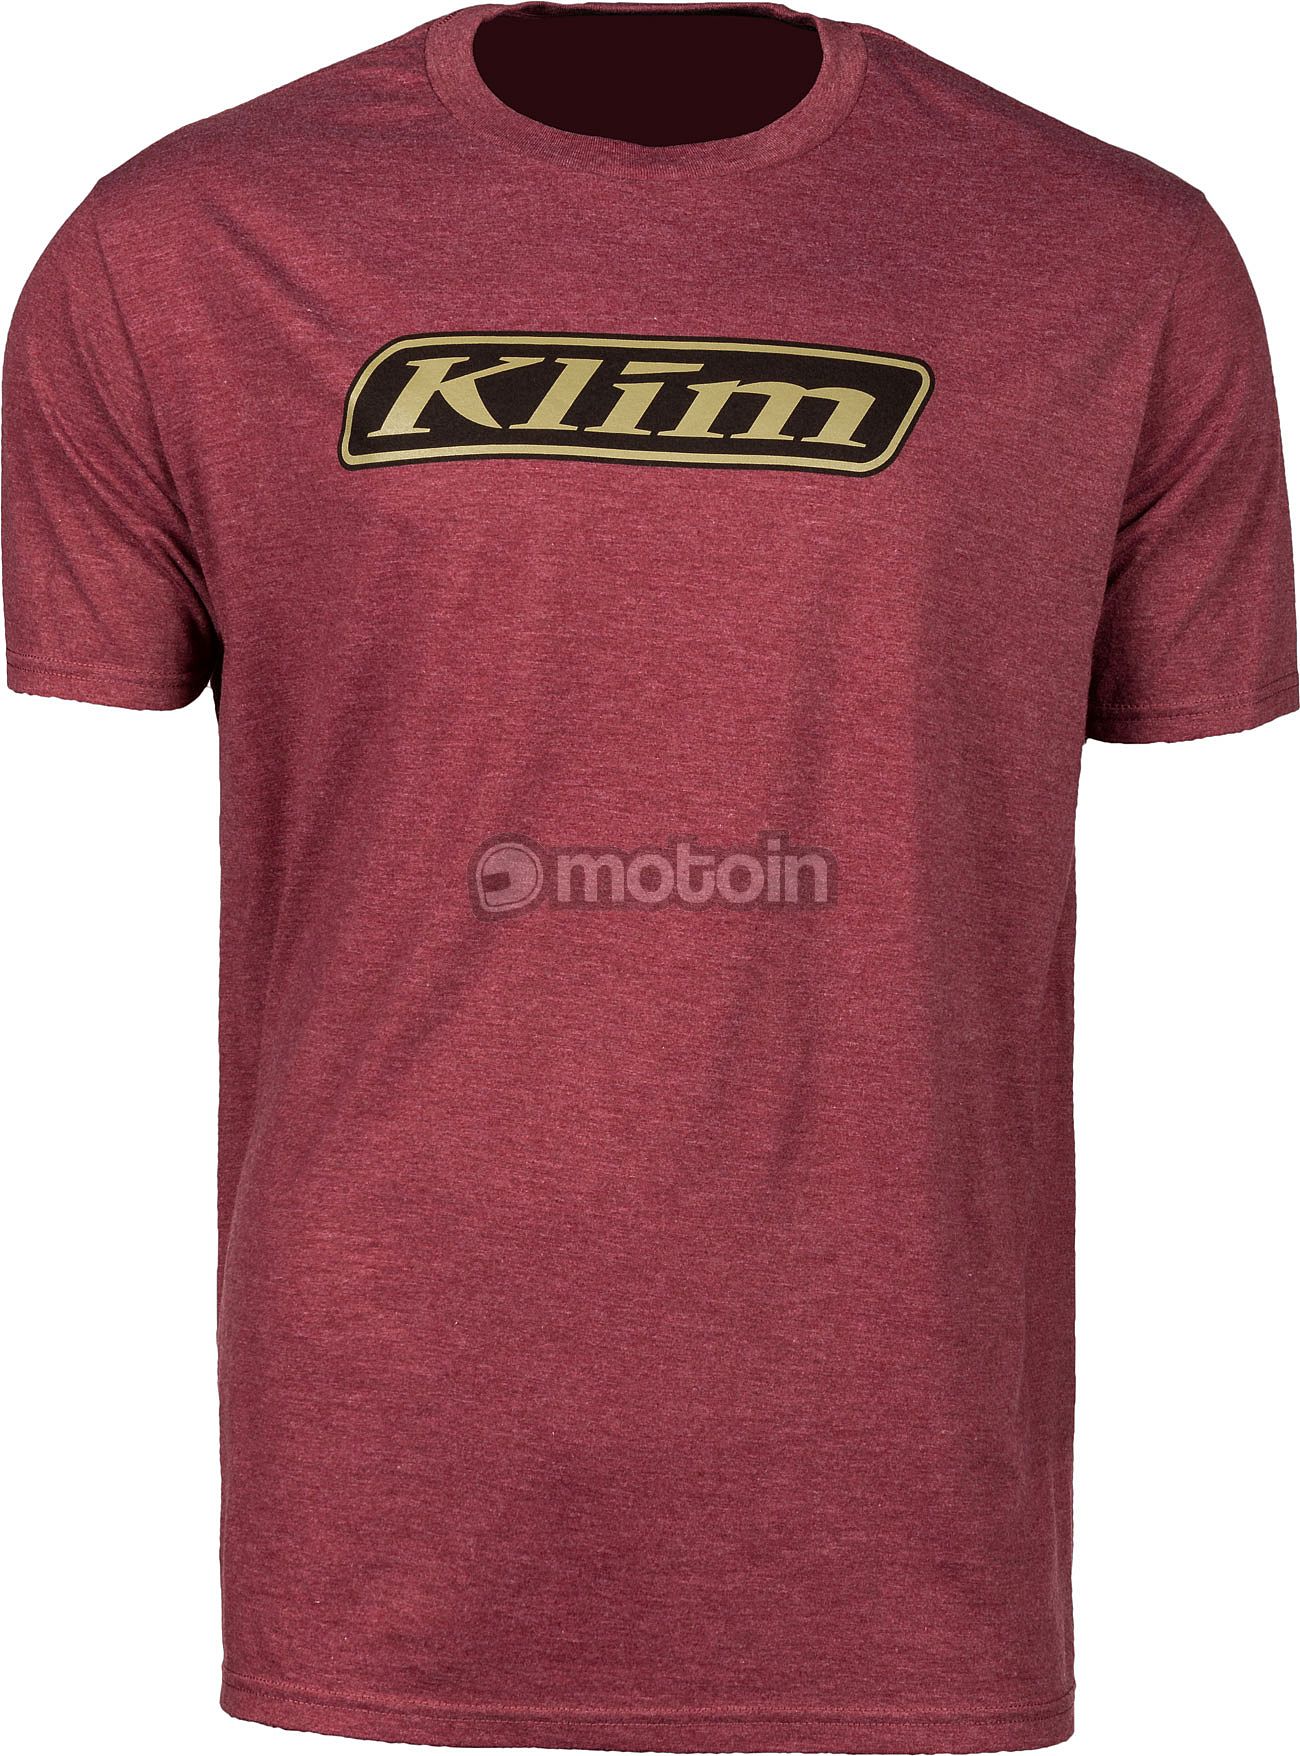 Klim Baja, camiseta